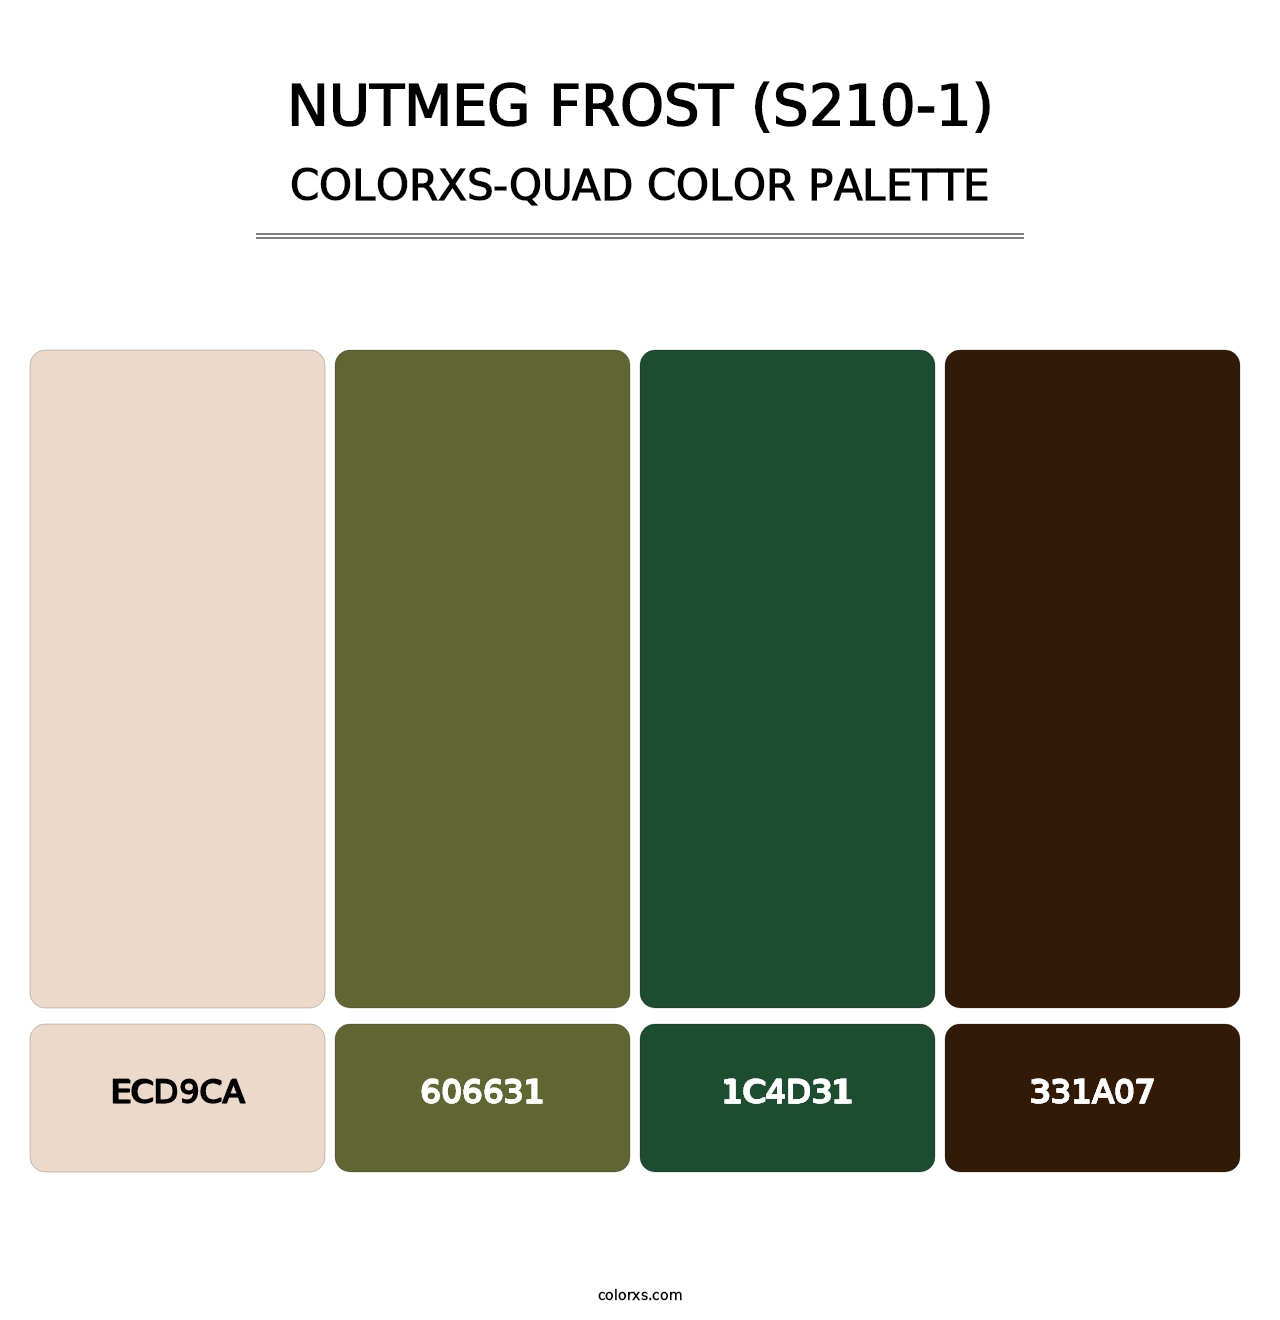 Nutmeg Frost (S210-1) - Colorxs Quad Palette